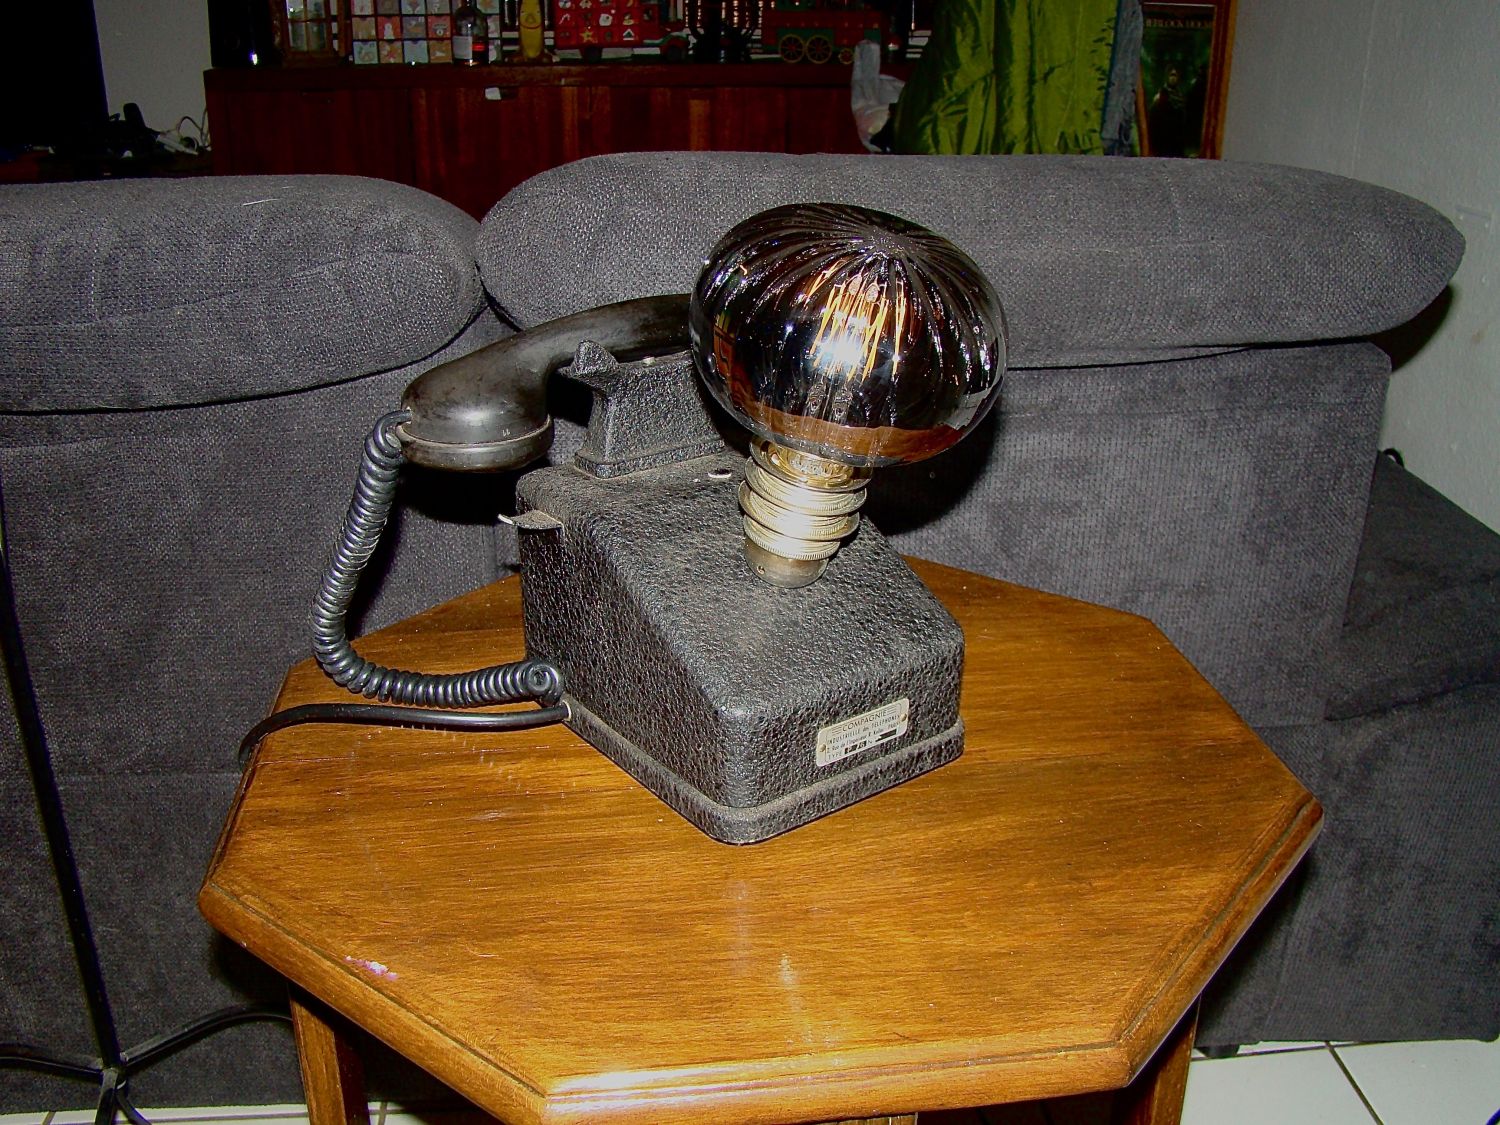 Lampe téléphone rétro steampunk